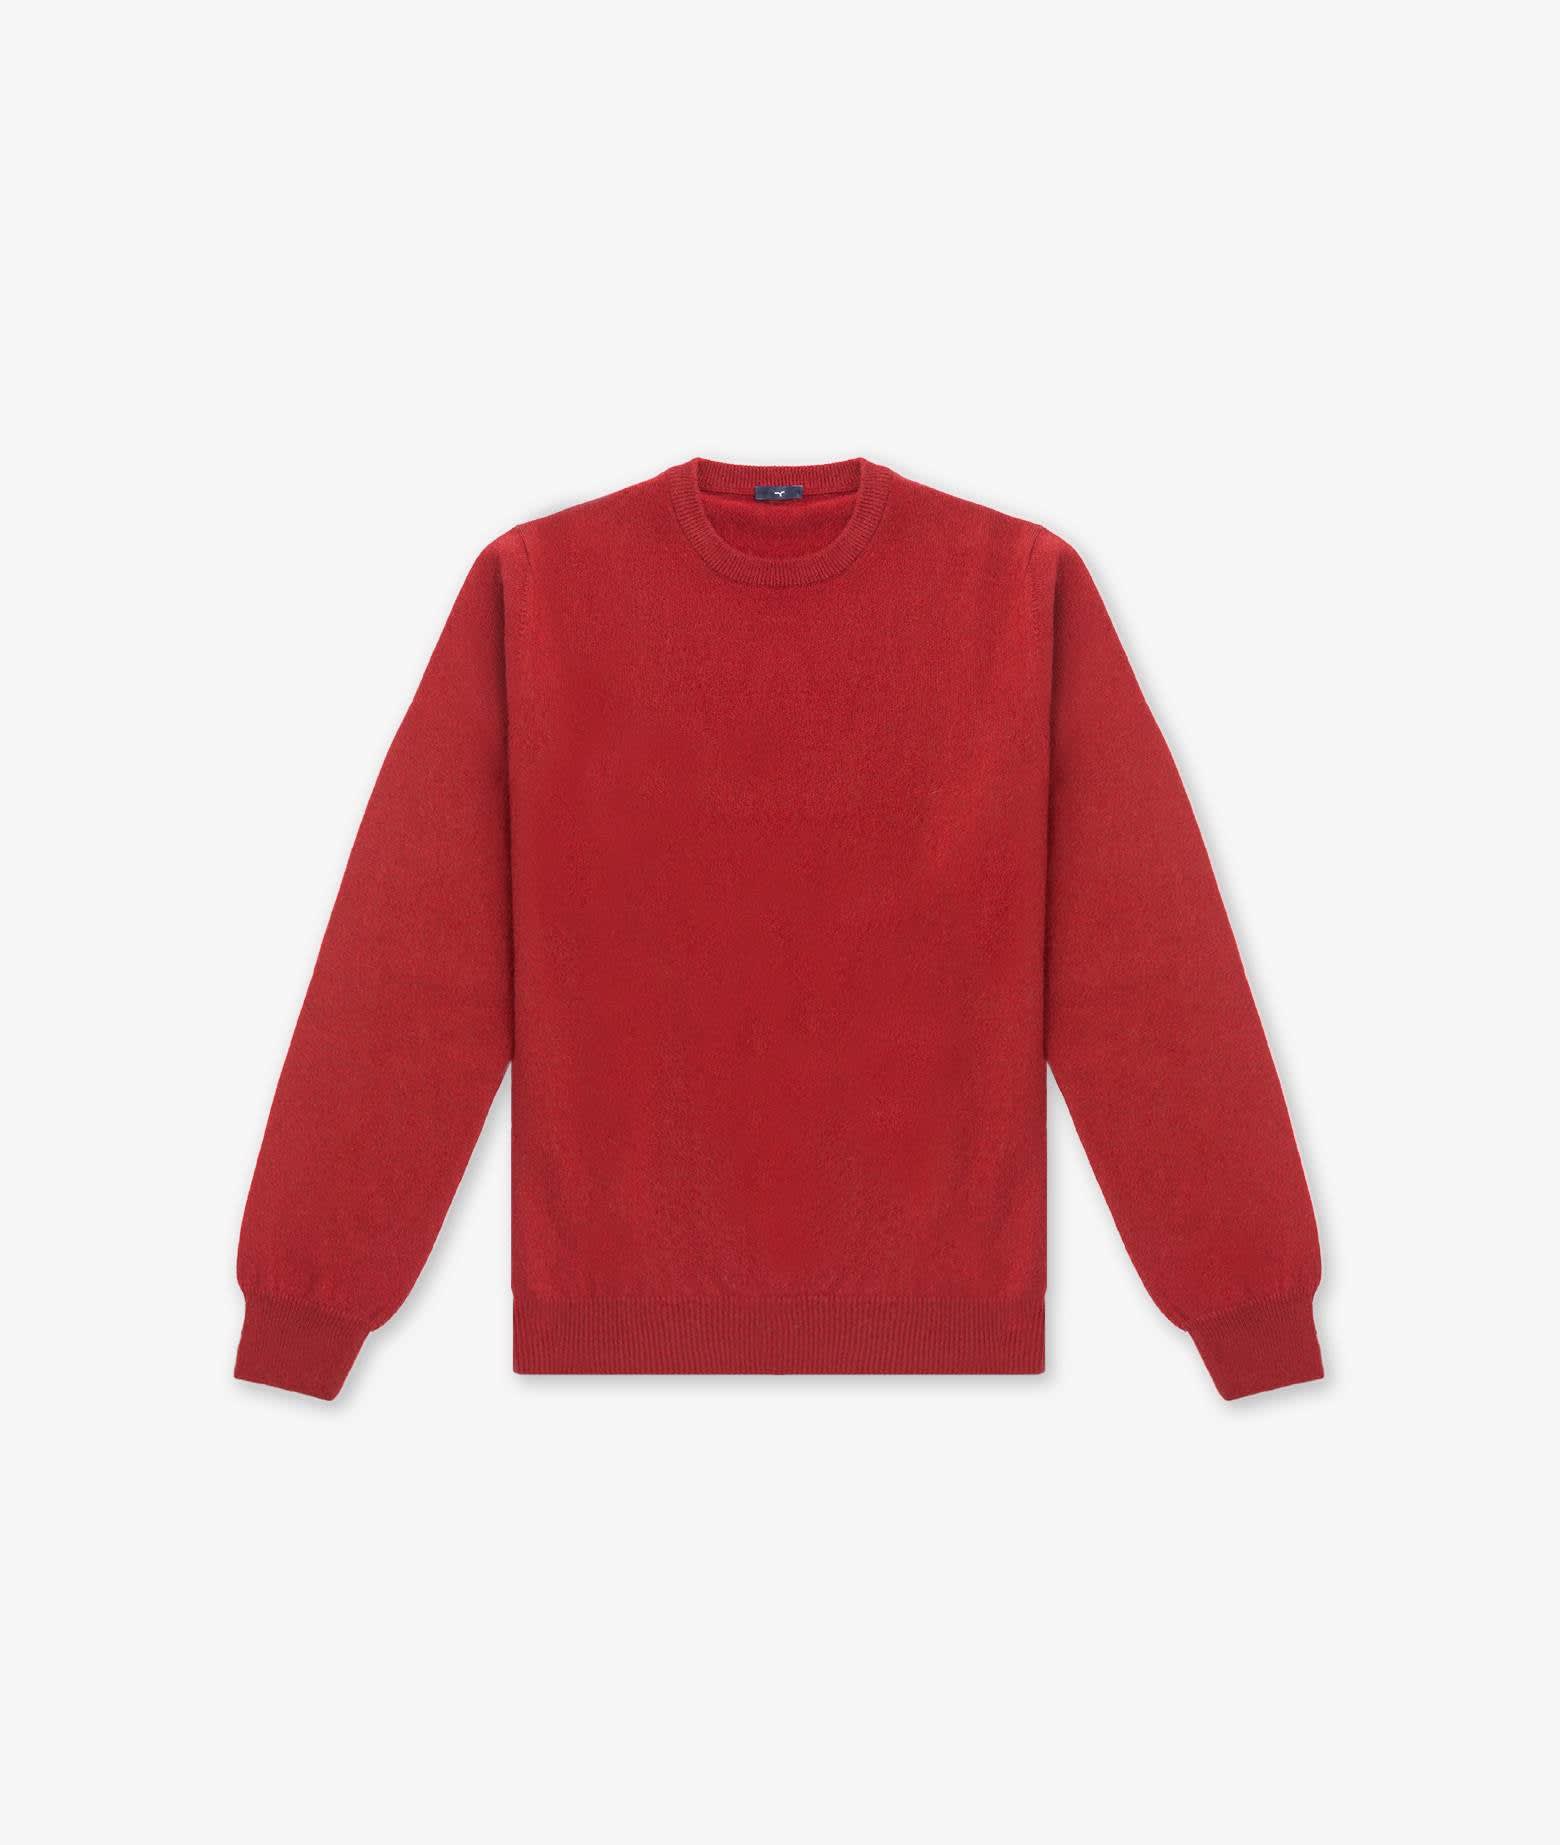 Crewneck Sweater Aspen Sweater